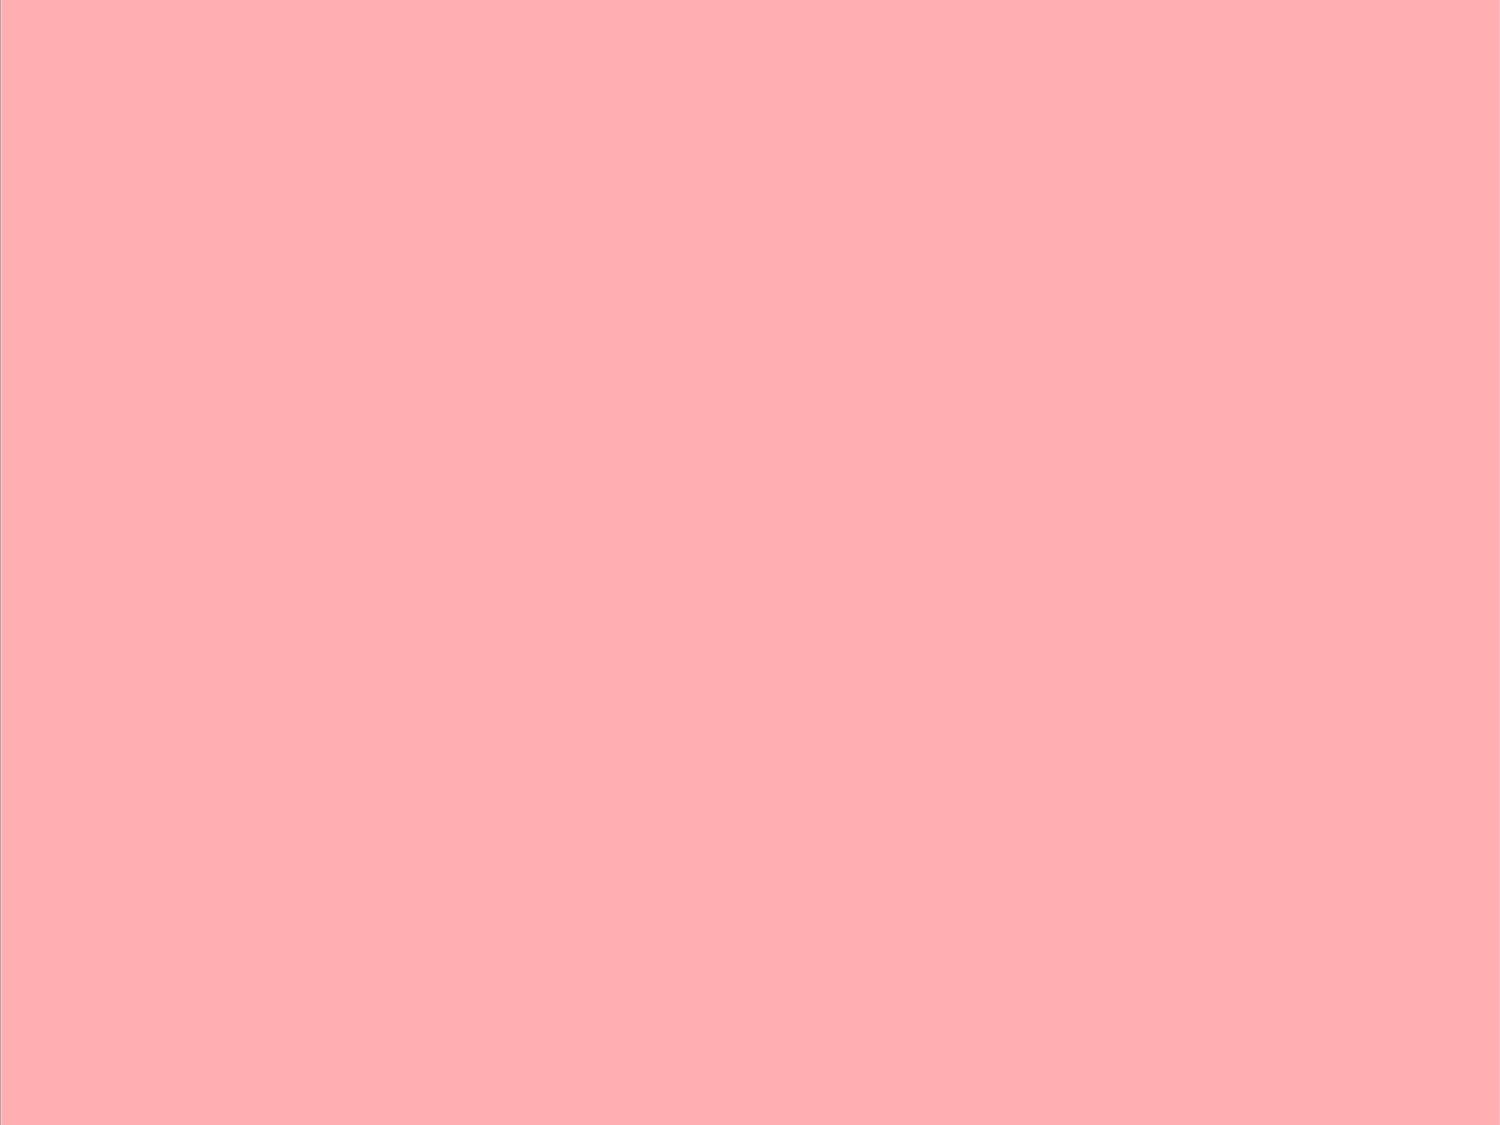  49 Plain Pink Wallpapers WallpaperSafari